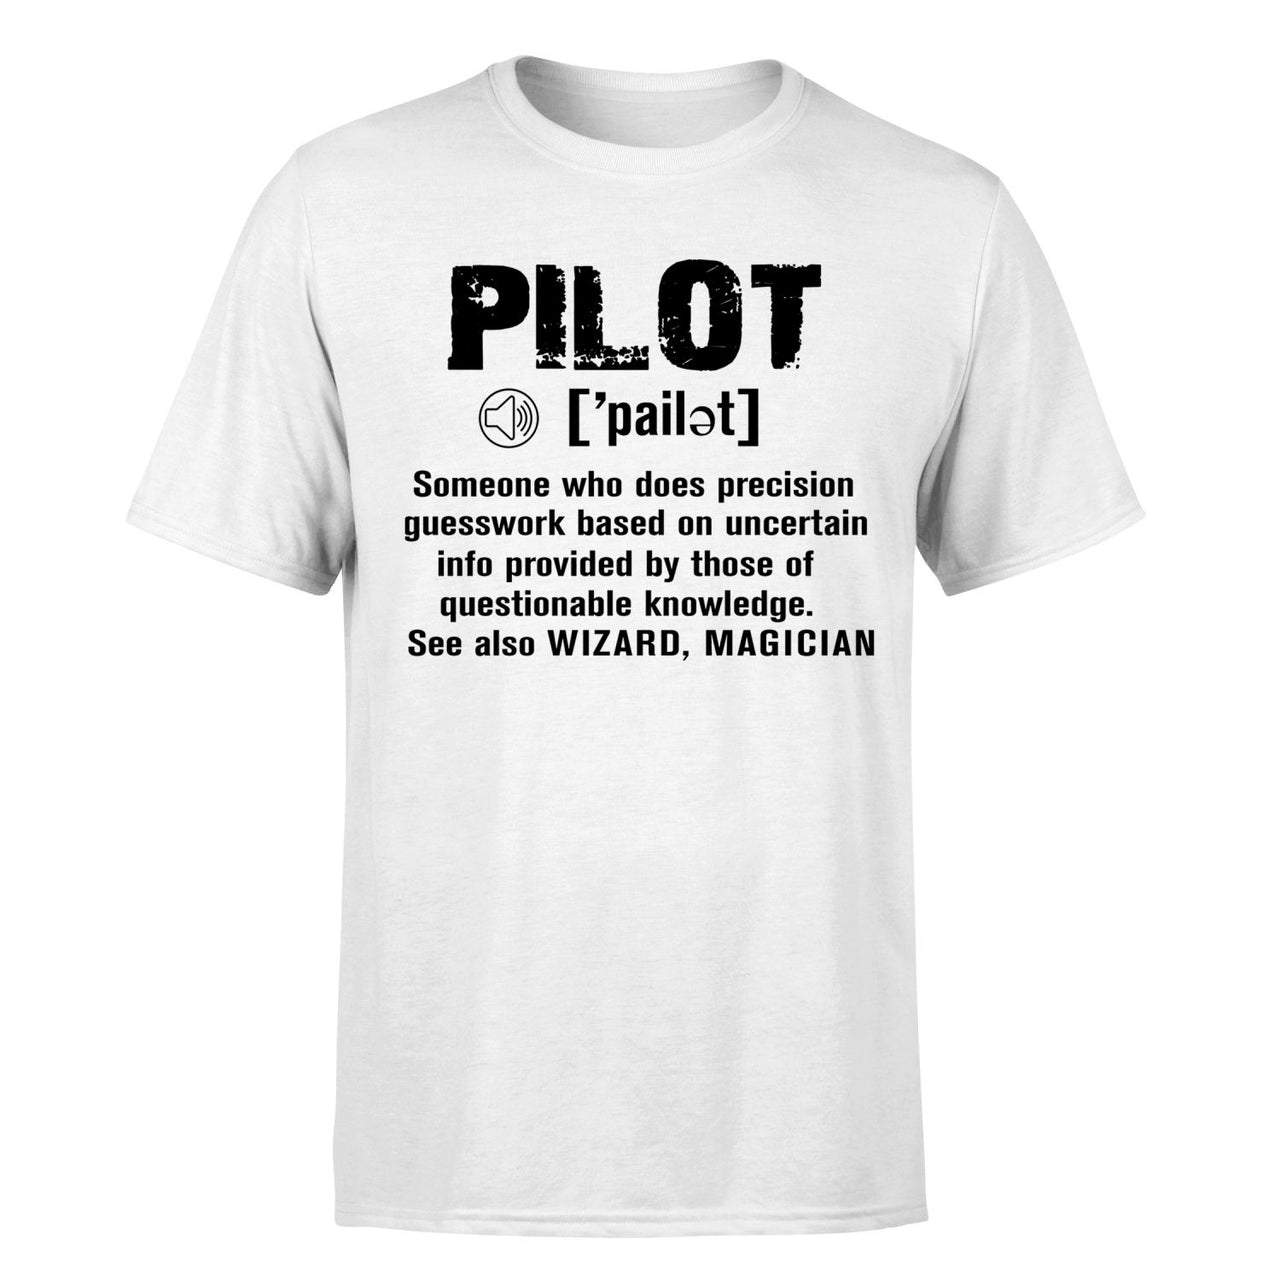 Pilot [Noun] Designed T-Shirts